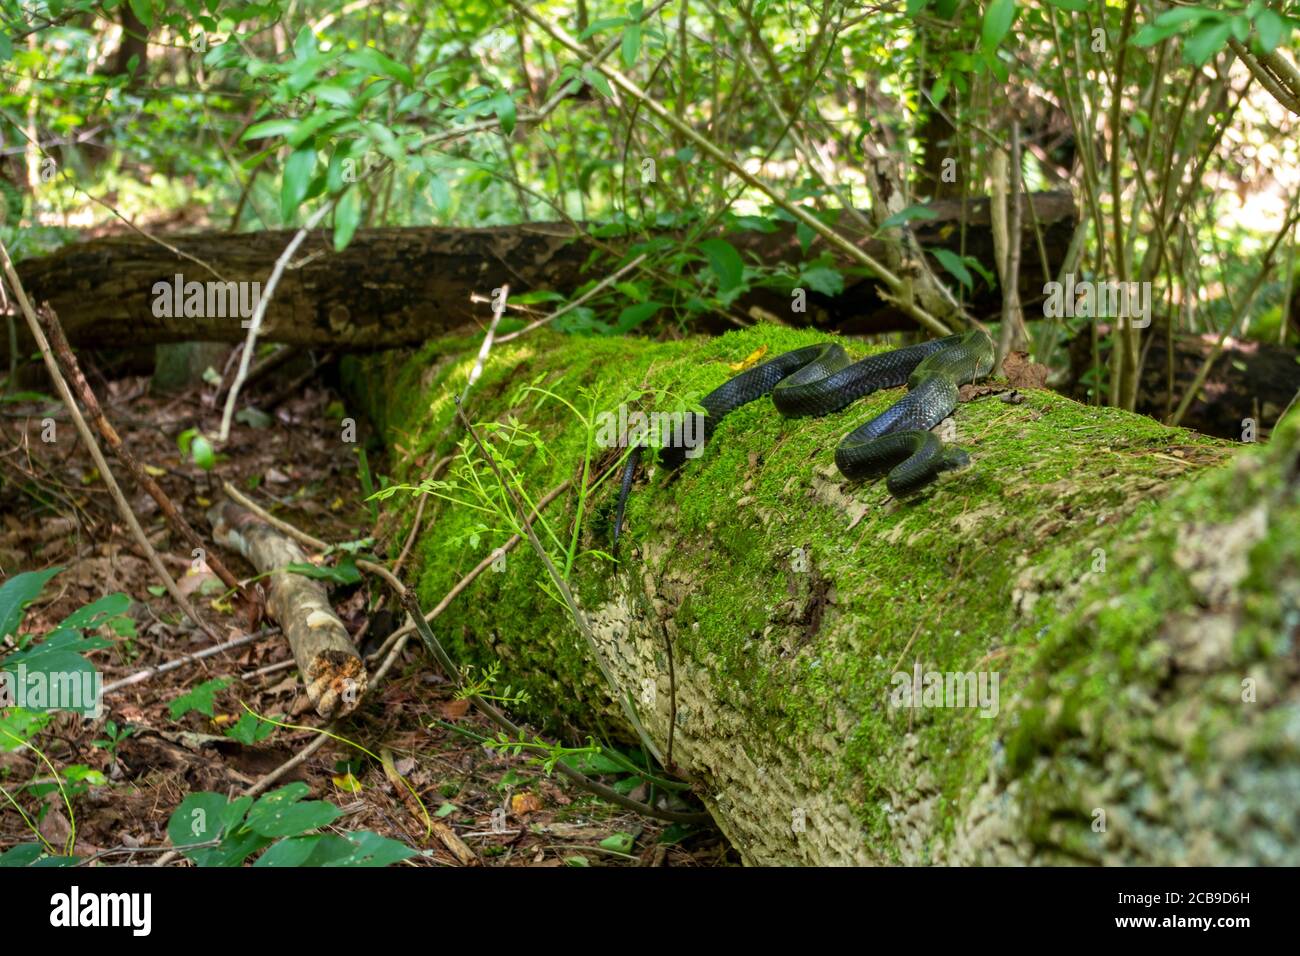 Imagen completa de esta hermosa serpiente arrastrándose en un tronco cubierto de musgo en esta idílica escena forestal. Foto de stock